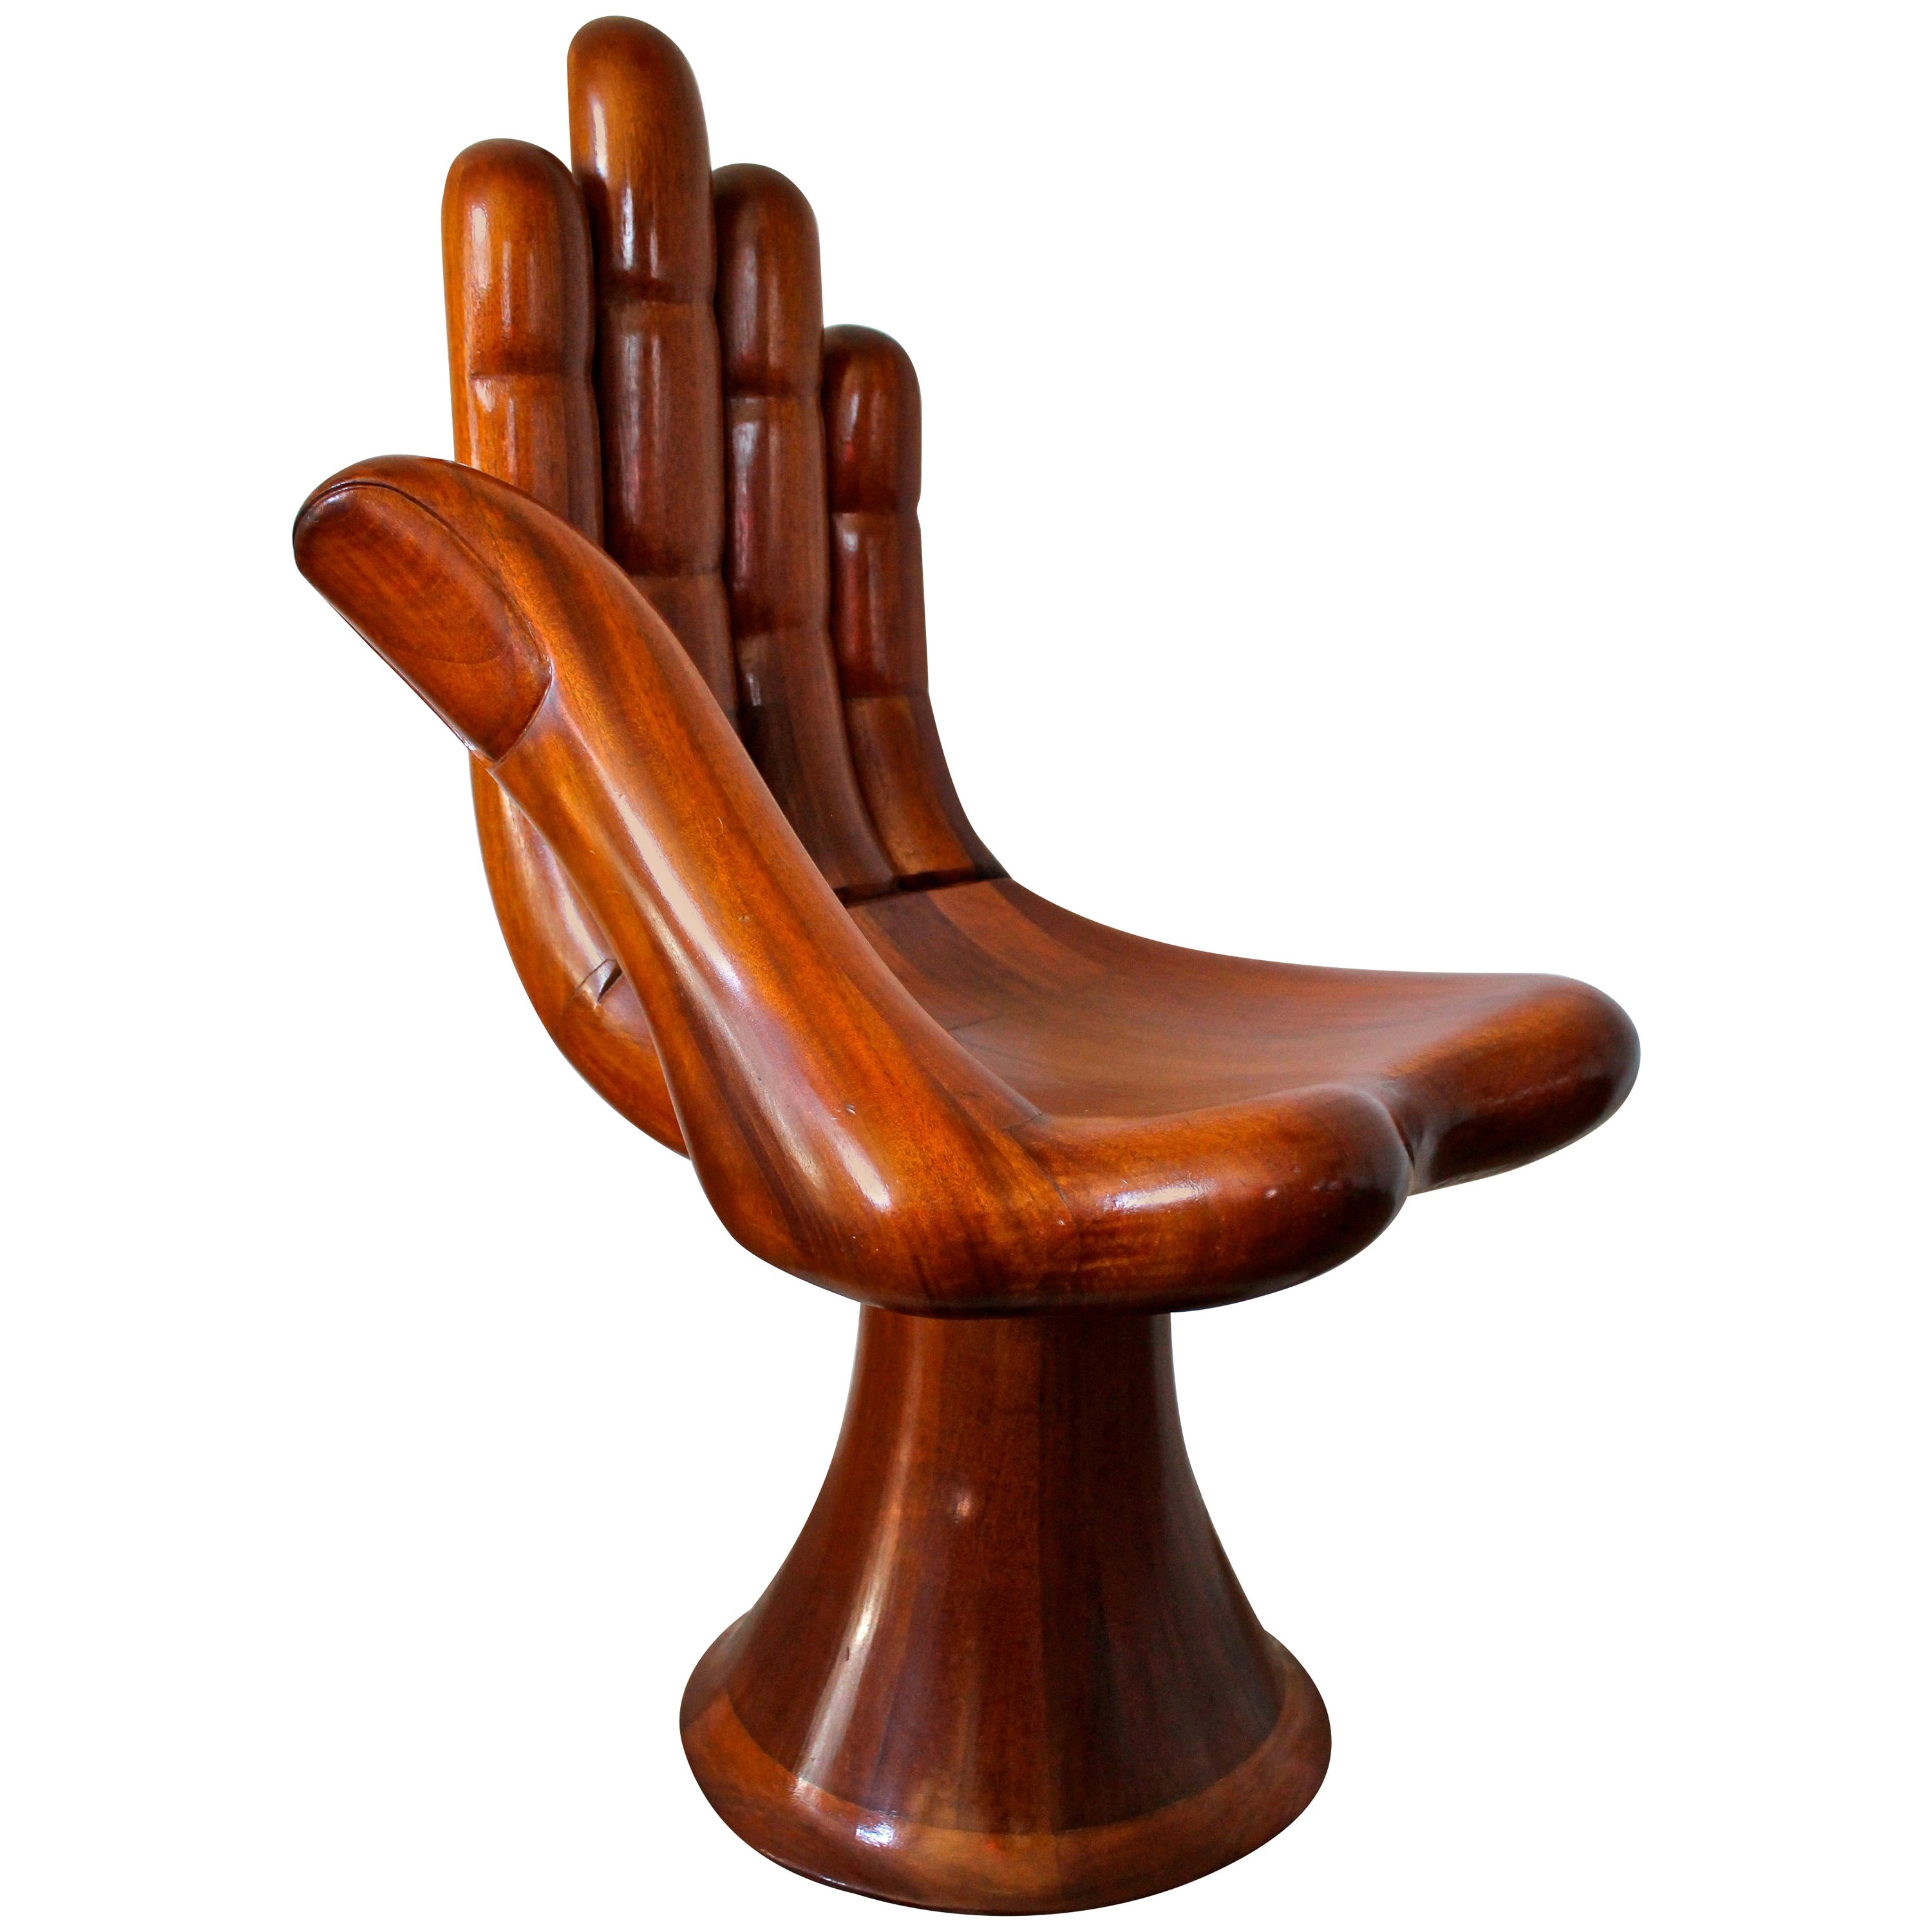 Pedro Friedeberg Mahogany Hand Chair or Silla-Mano, Mexico City, 1970